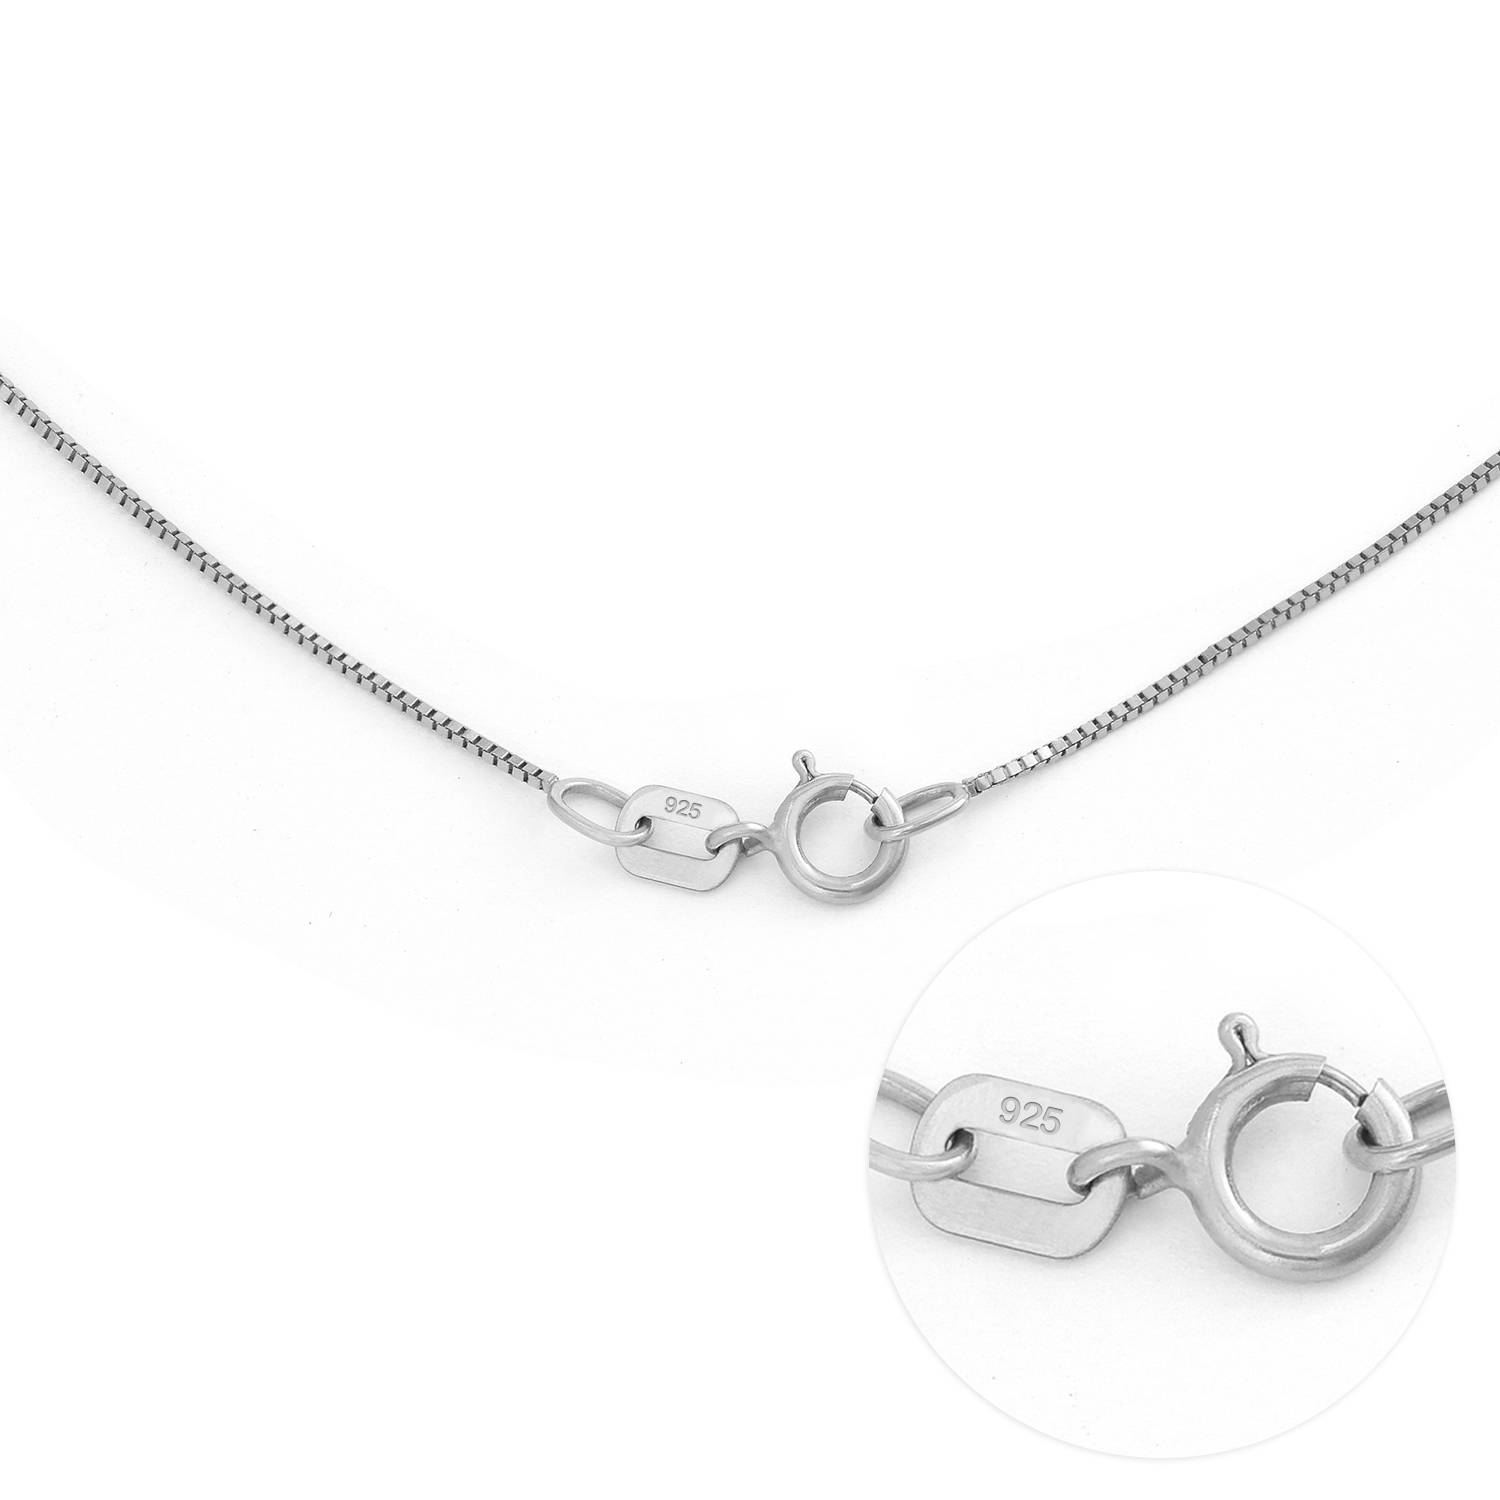 Russische ring ketting met 3 ringen in Premium Zilver-2 Productfoto